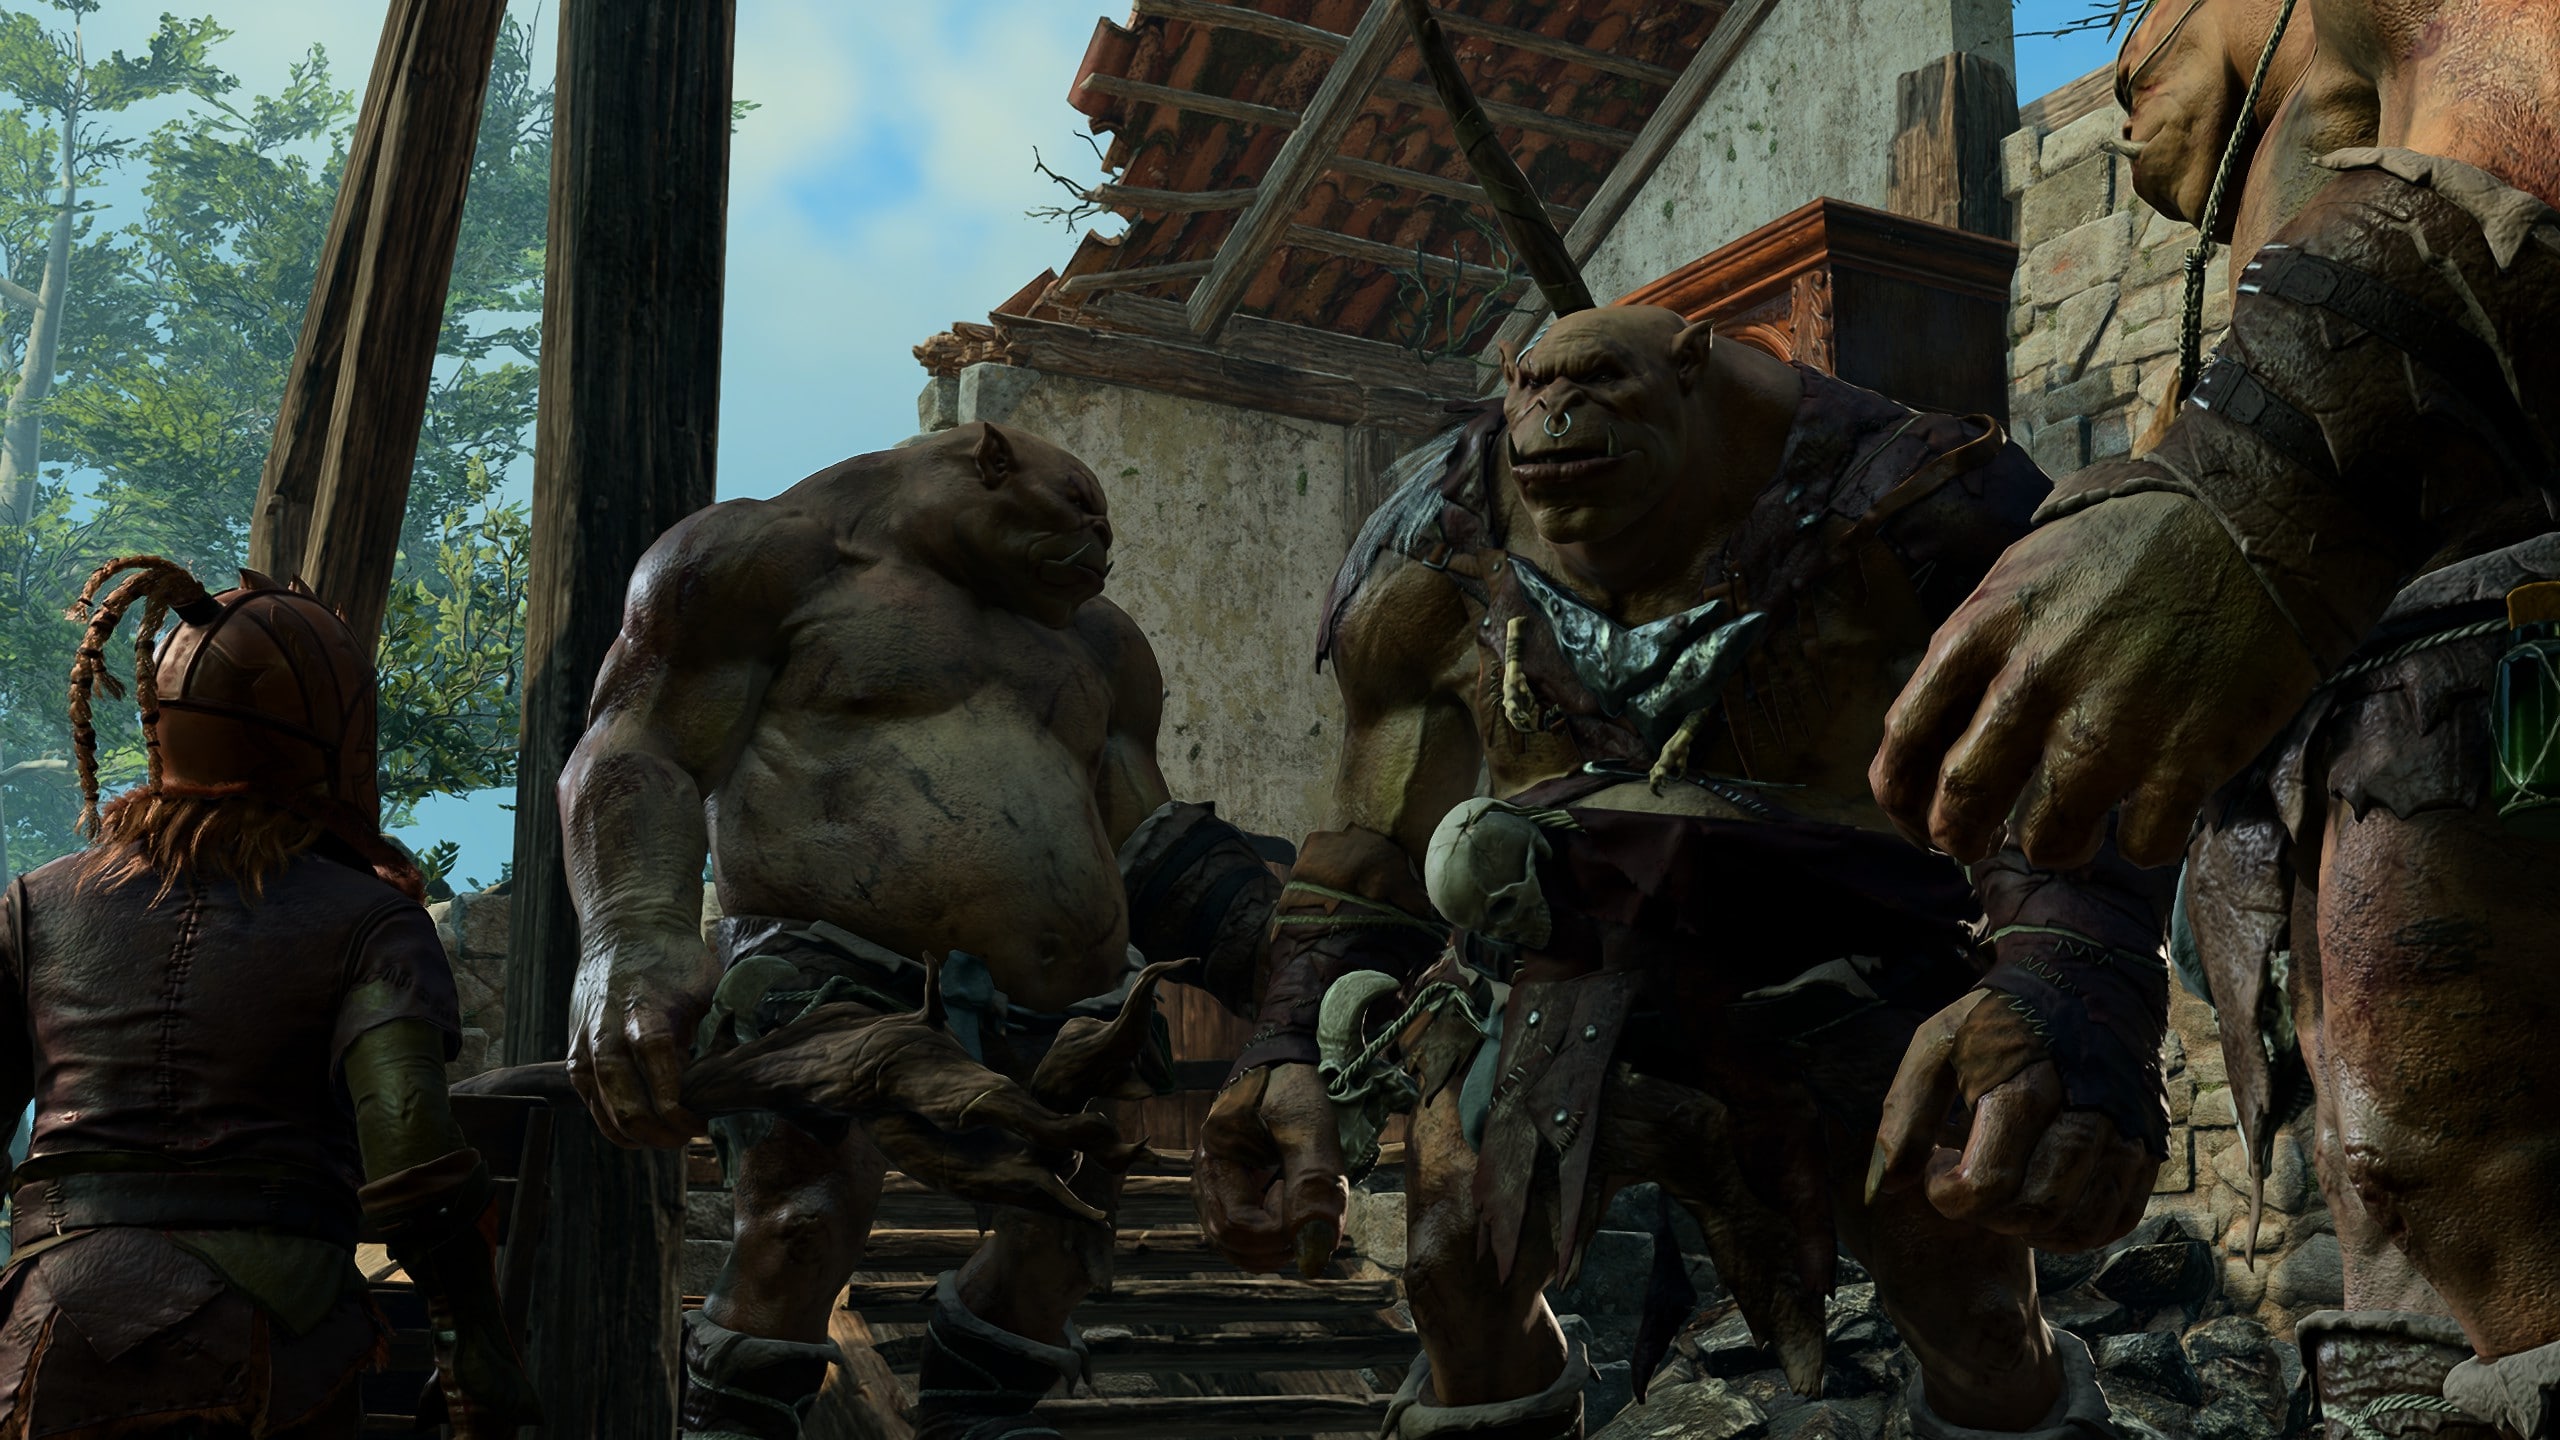 Screenshot von Baldur's Gate 3. Zu sehen sind Drei Oger, die in einem zerstörten Haus stehen. Ein Halbling steht in der Mitte und verhandelt mit den Ogern. 